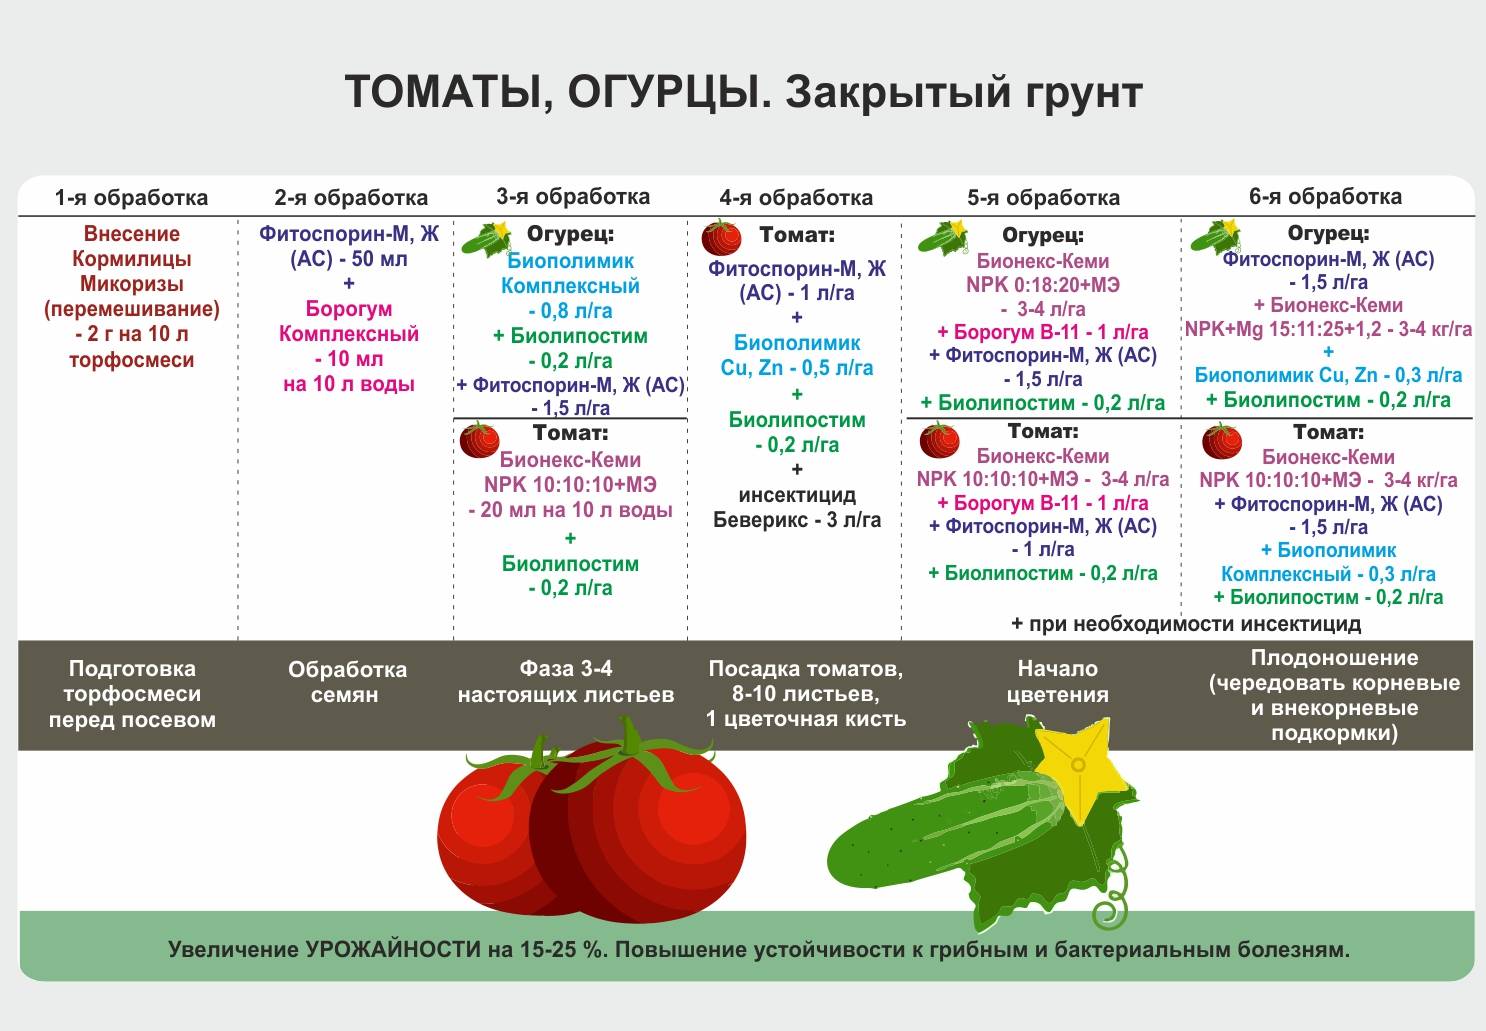 Как пересадить рассаду томатов и перцев в теплицу правильно? видео — ботаничка